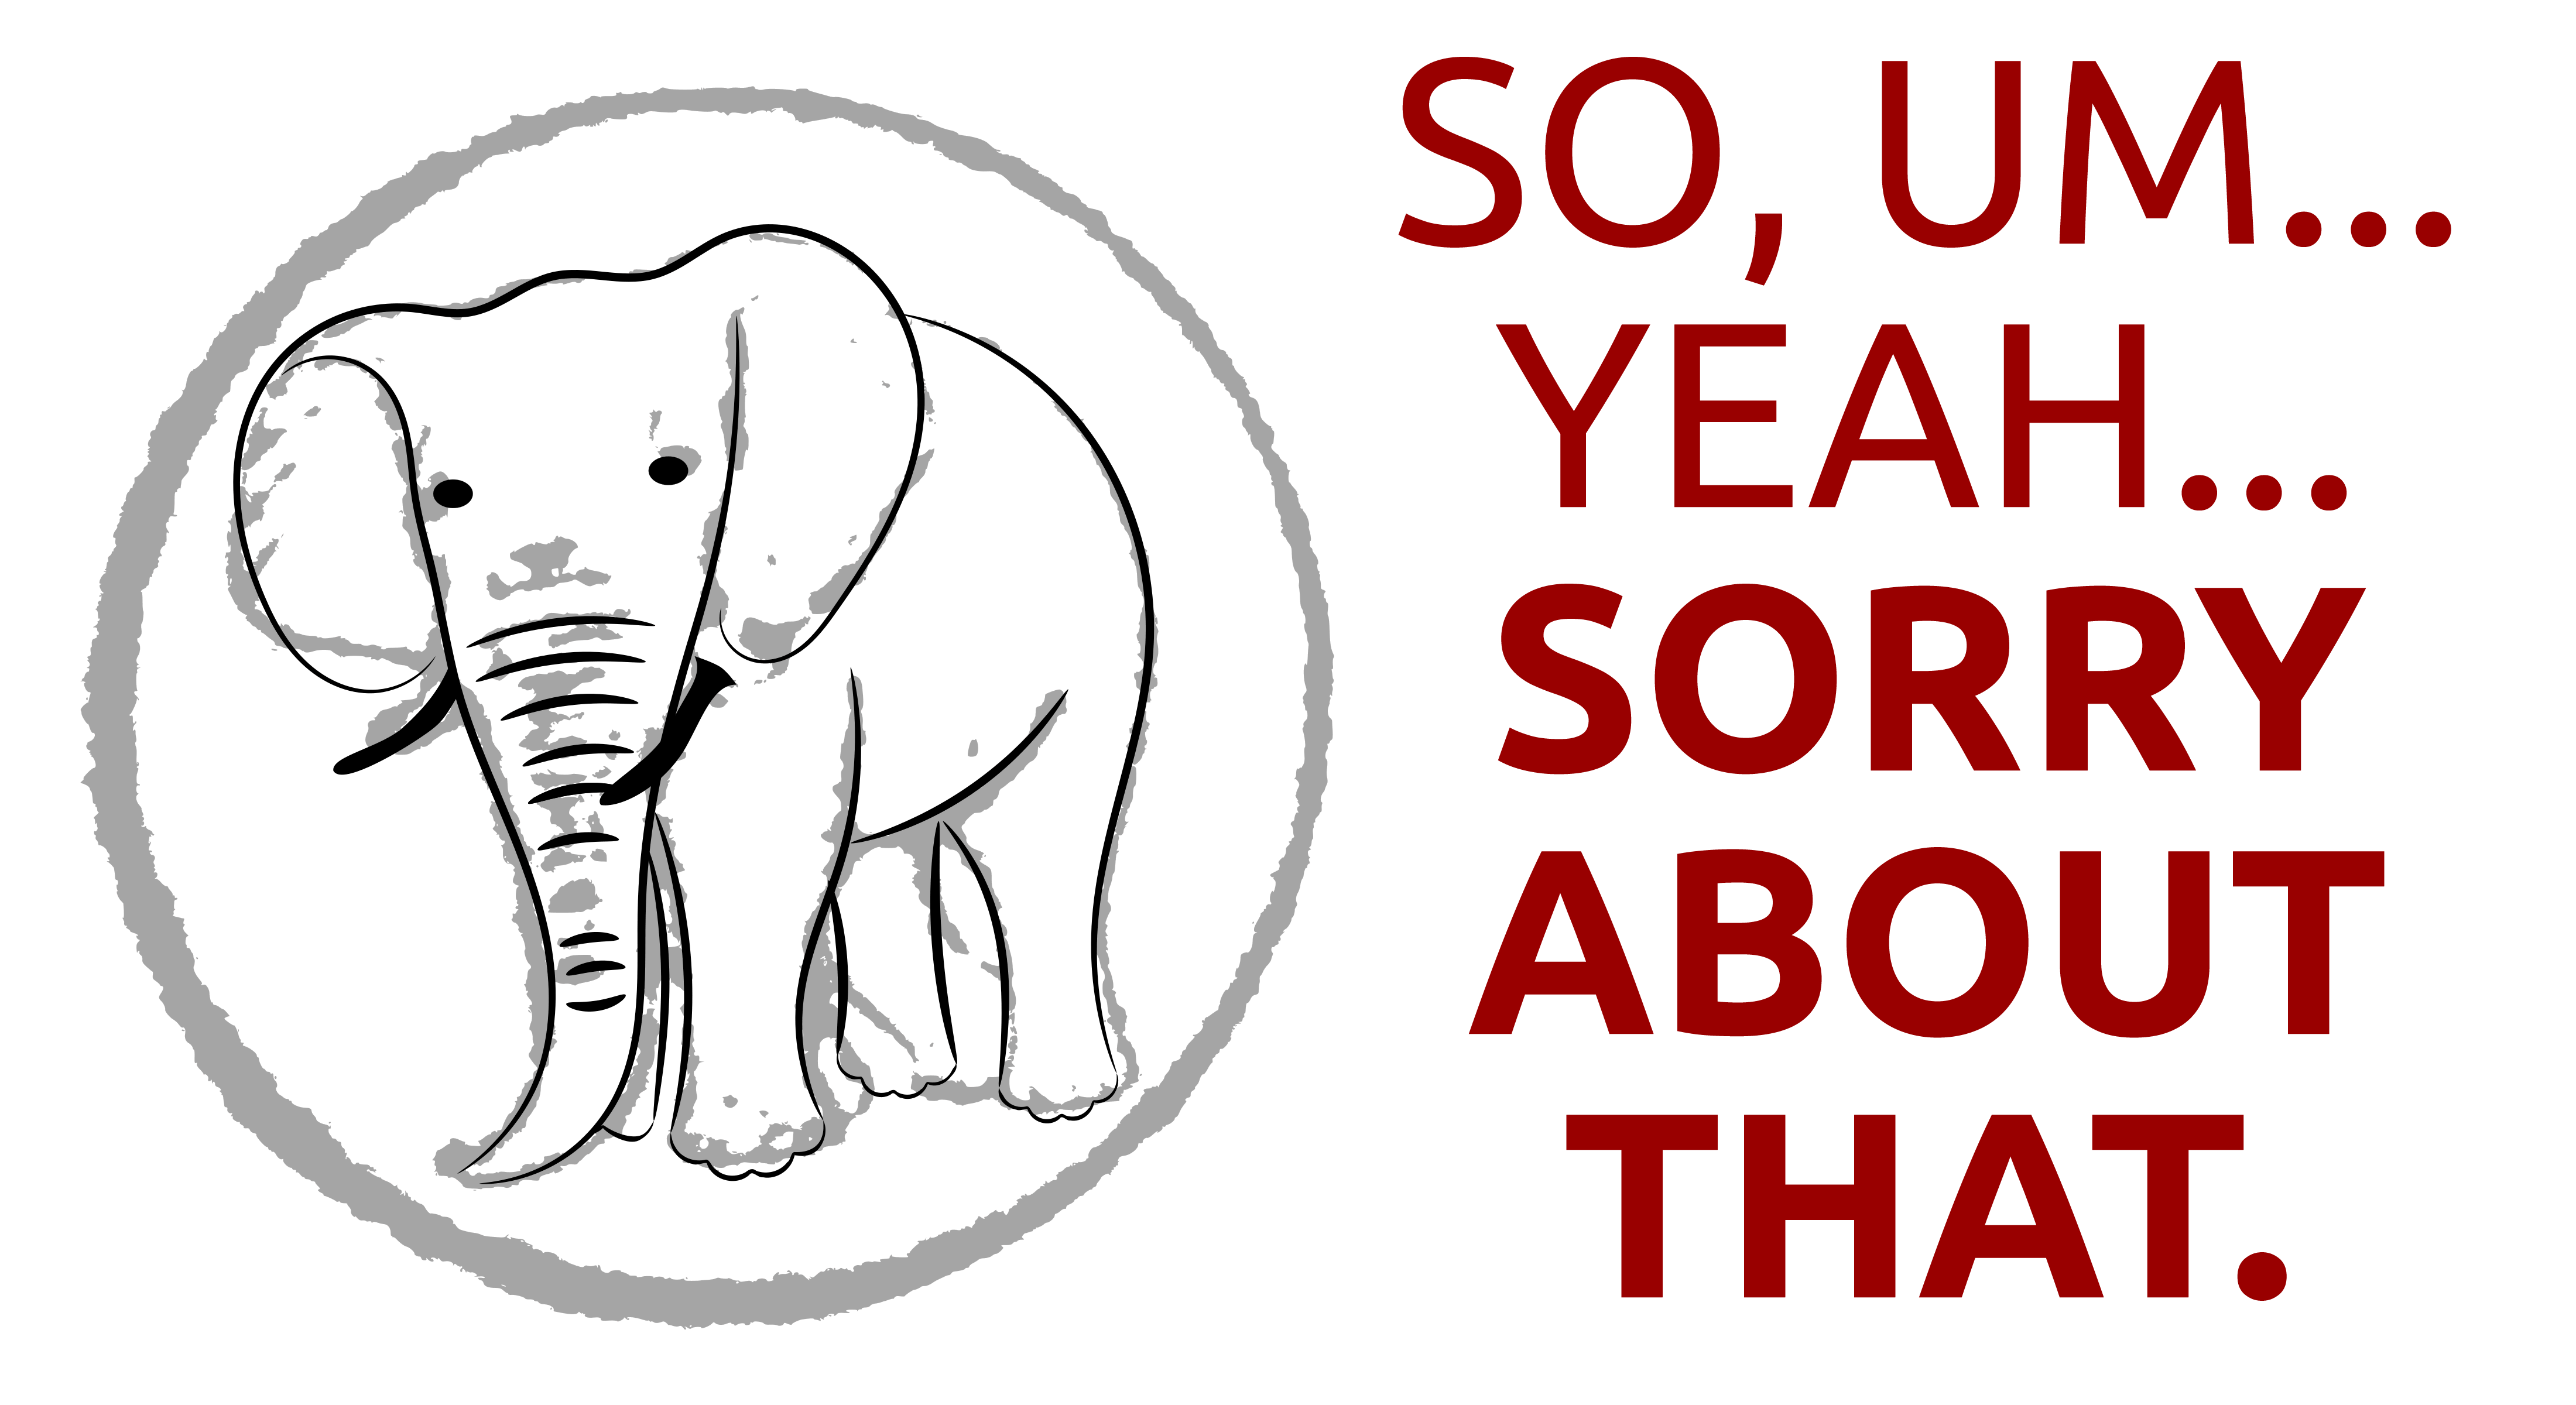 A Republican apology